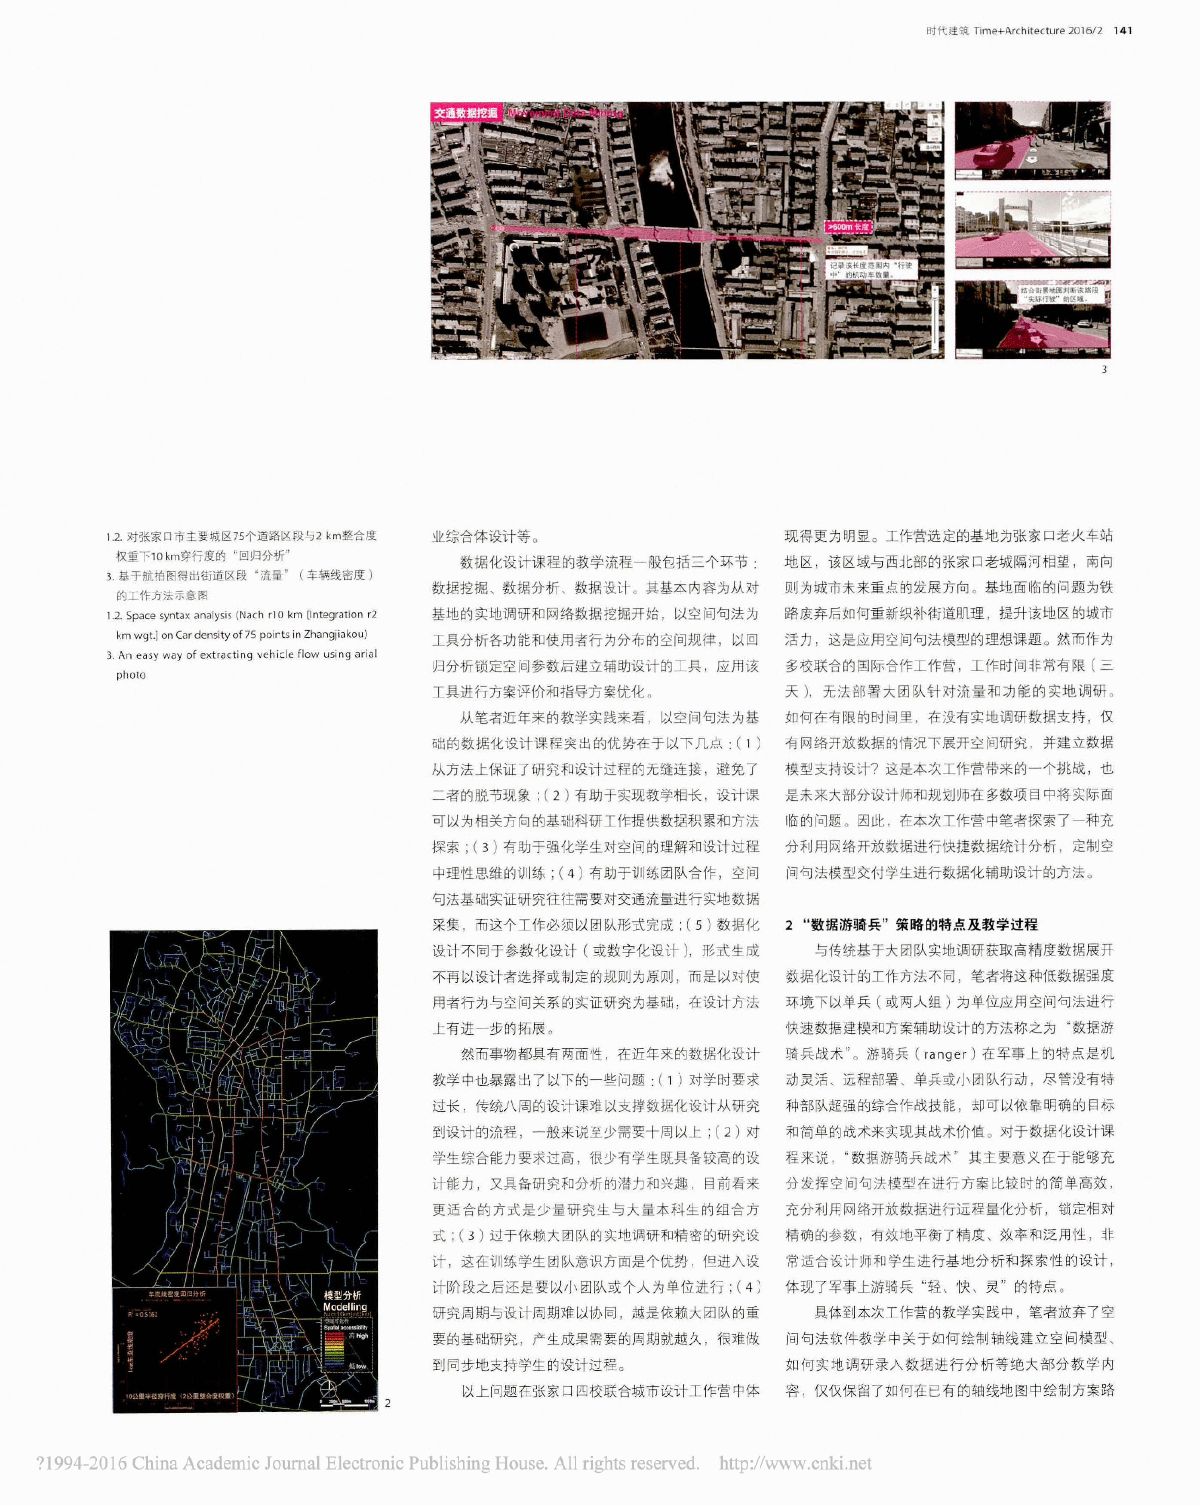 数据游骑兵实用战术解析空间句法在短期城市设计工作营设计教学中的应用-图二